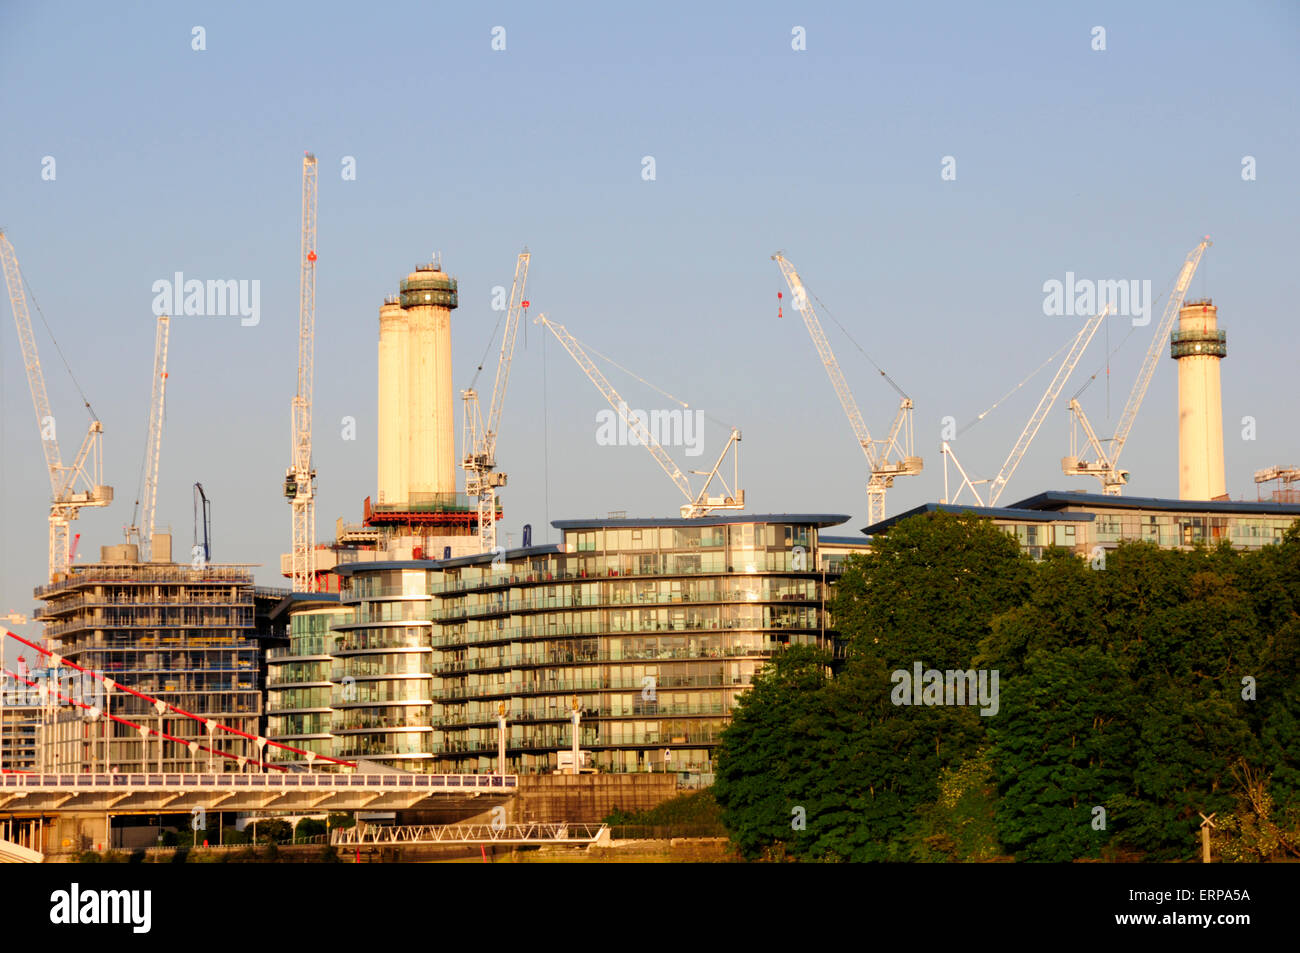 Grúas de construcción en la central eléctrica de Battersea, Londres, Inglaterra Foto de stock